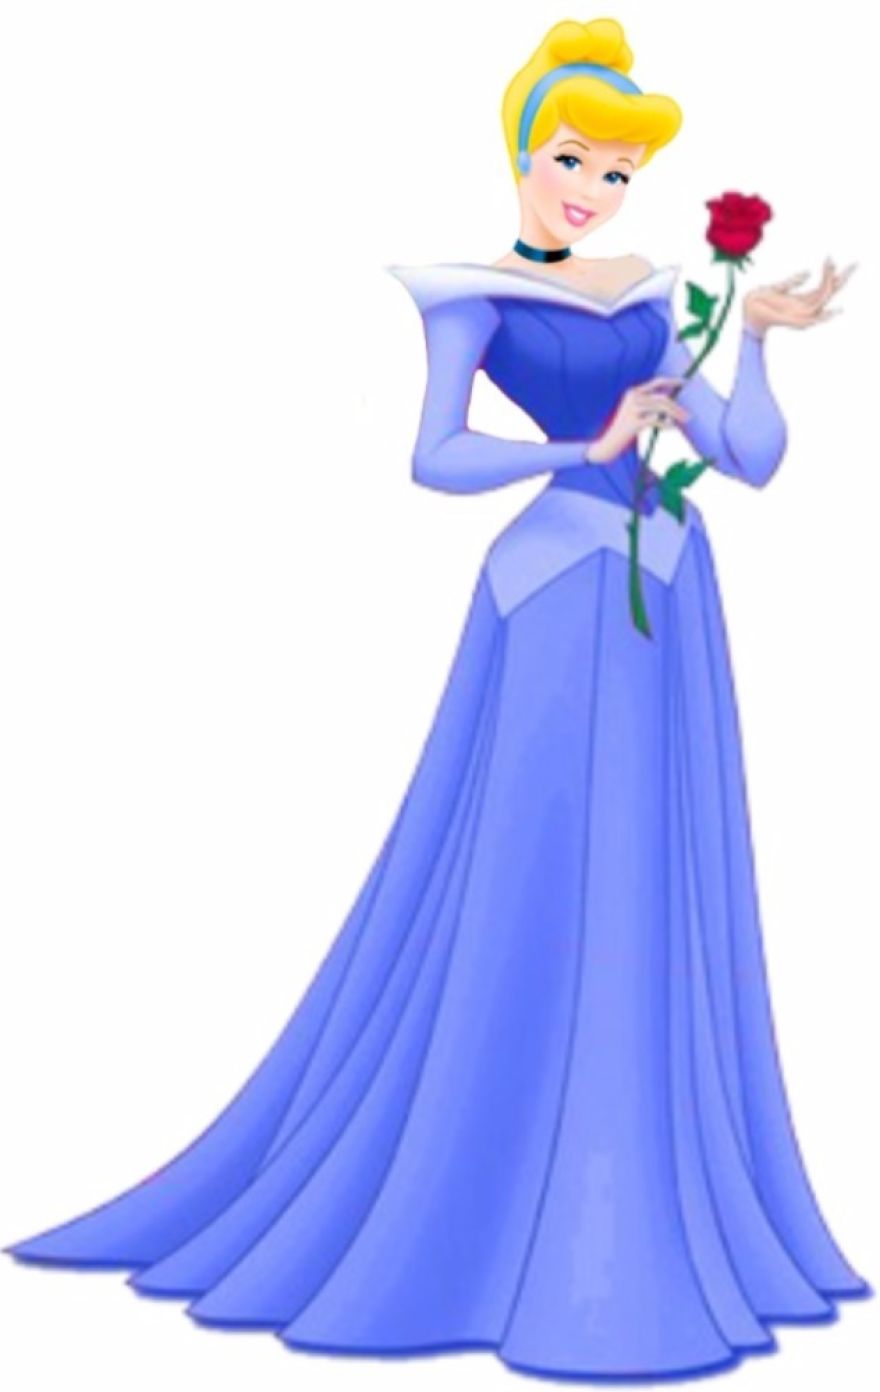 Cinderella in Aurora’s Dress